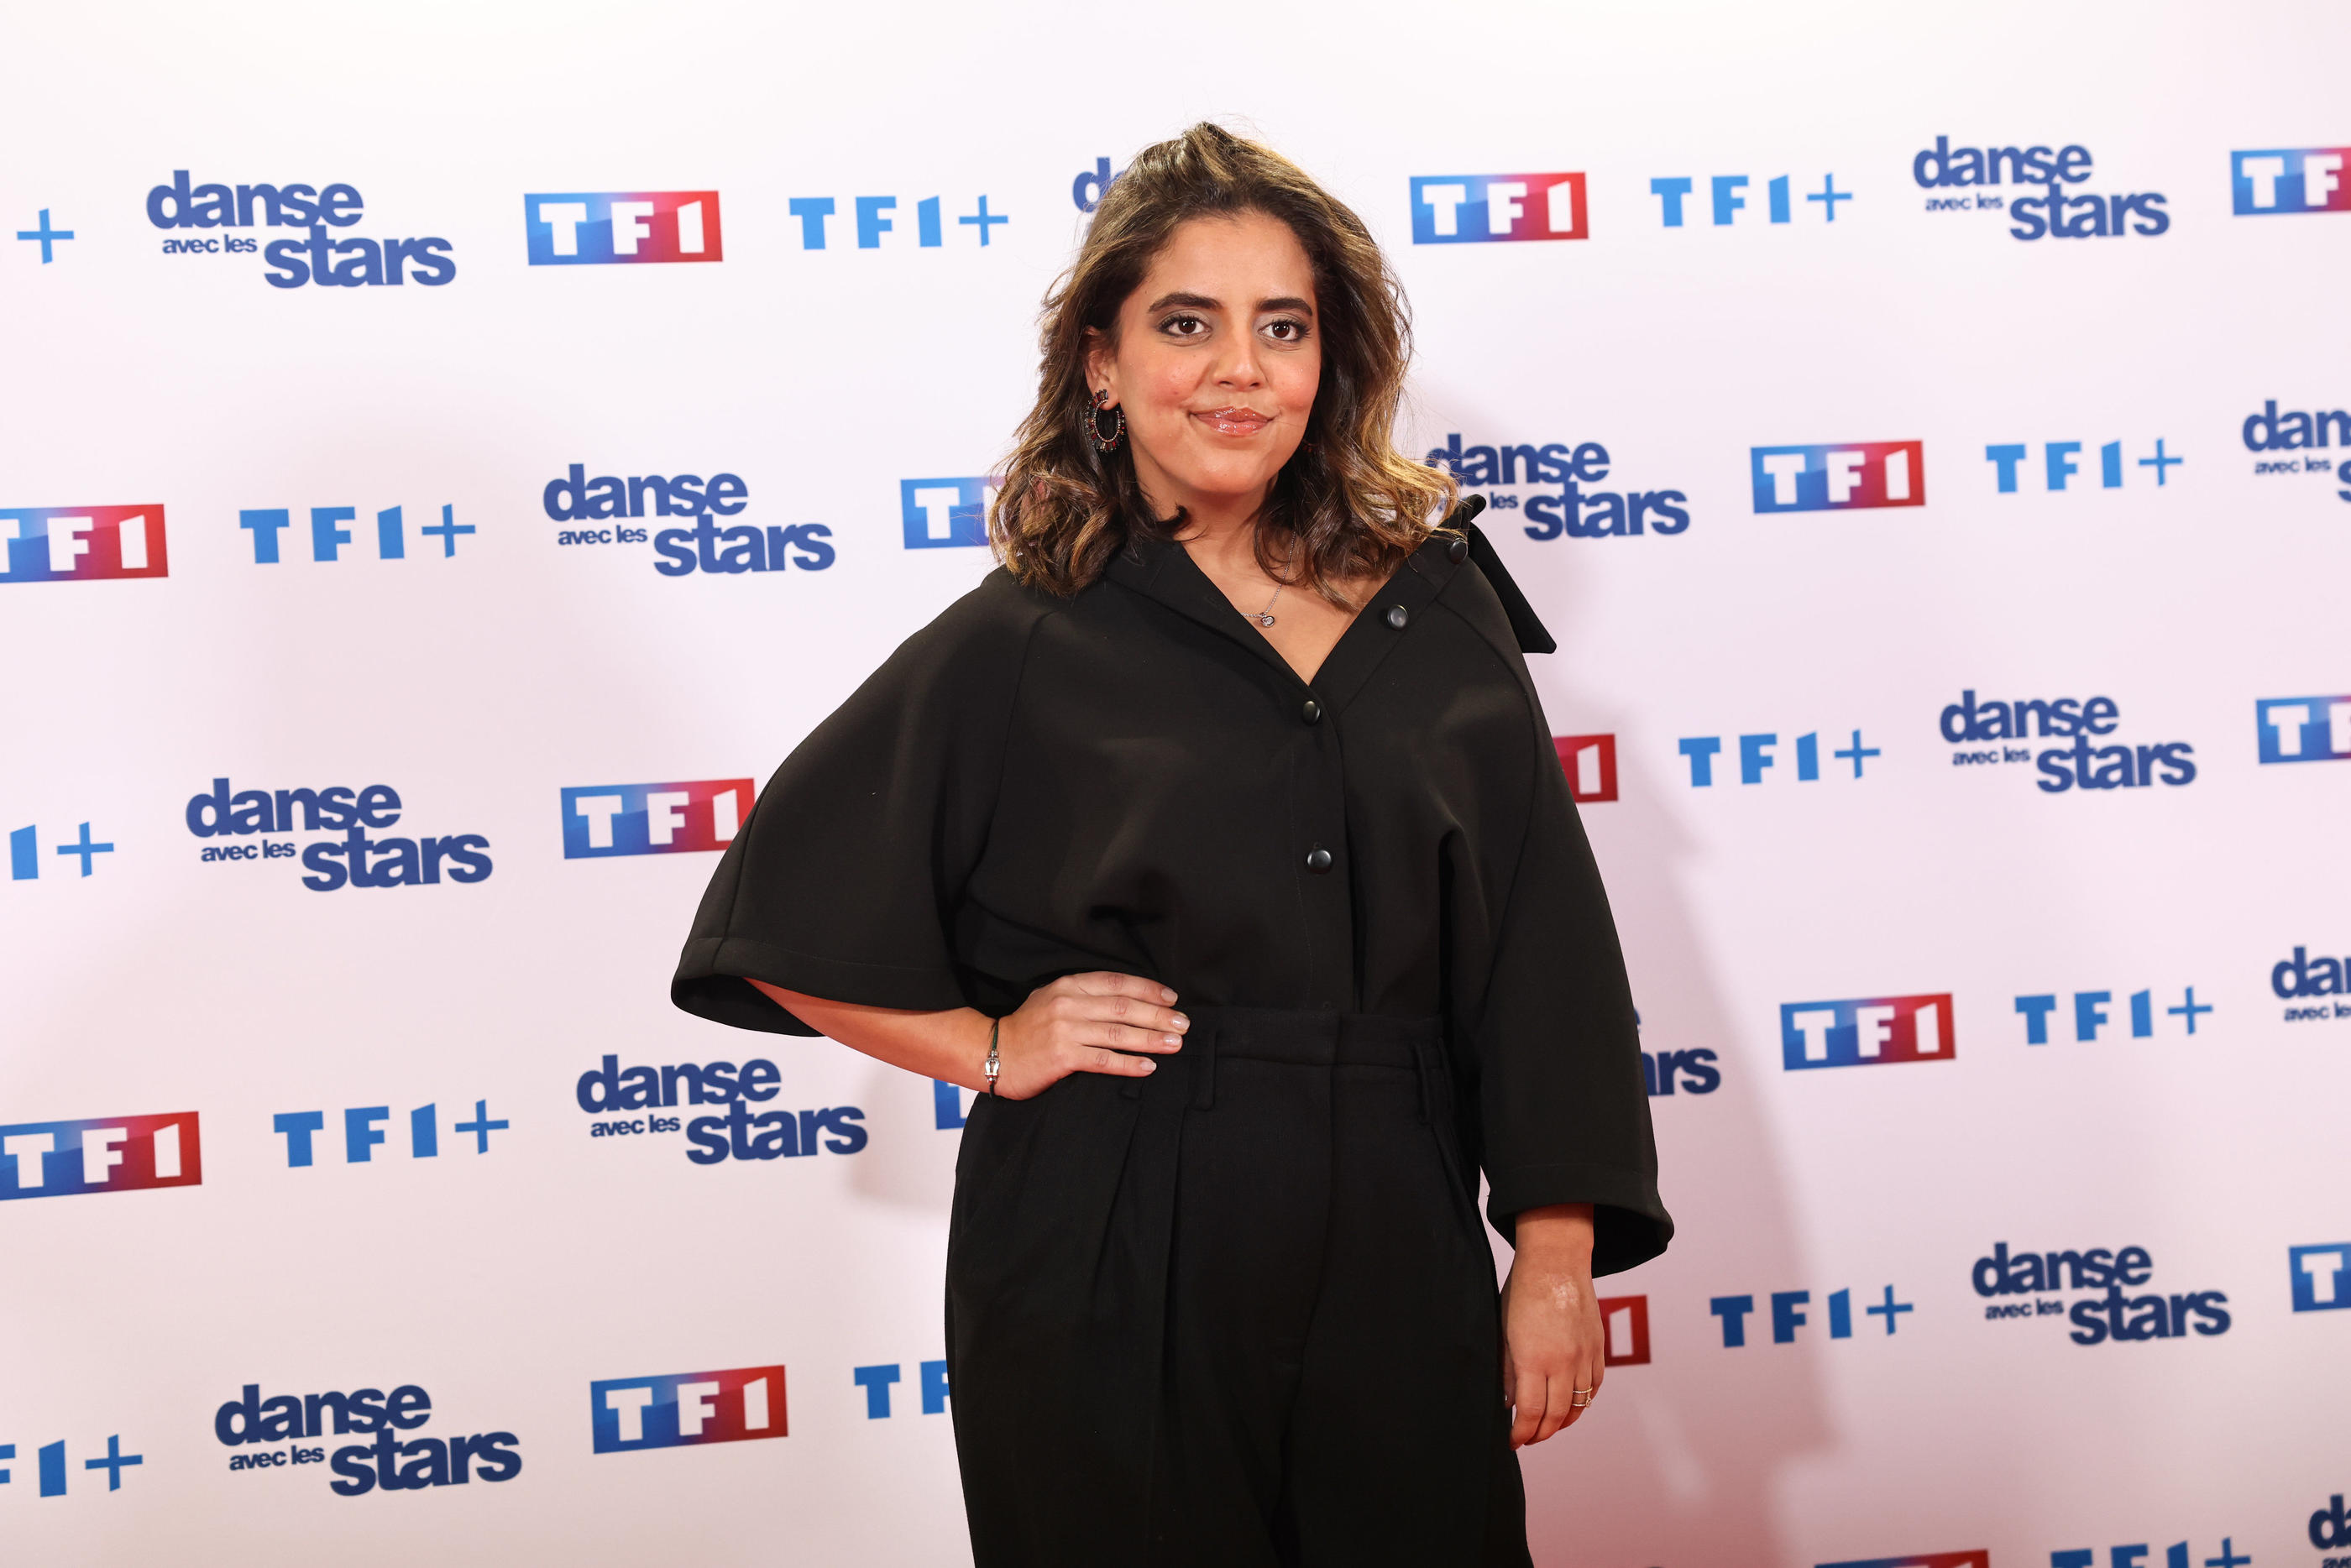 Ce vendredi 12 avril, la candidate Inès Reg a remporté le premier 10 de la 13e saison de «Danse avec les stars» sur TF1. LP/Frédéric Dugit